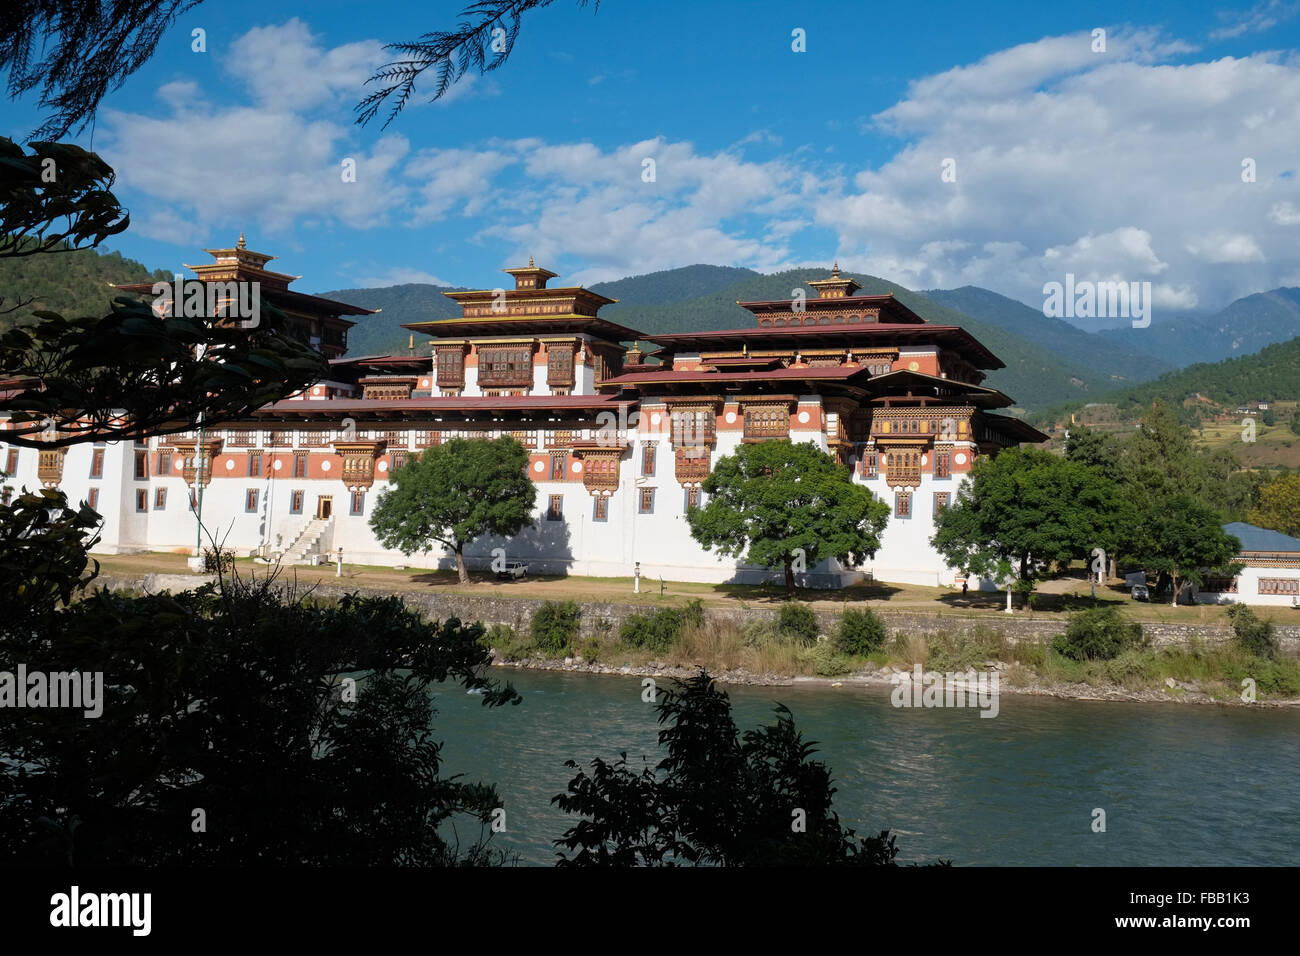 Le Punakha Dzong Pungtang (également connu sous le nom de Dechen Photrang Dzong), Punakha, Bhoutan. Banque D'Images